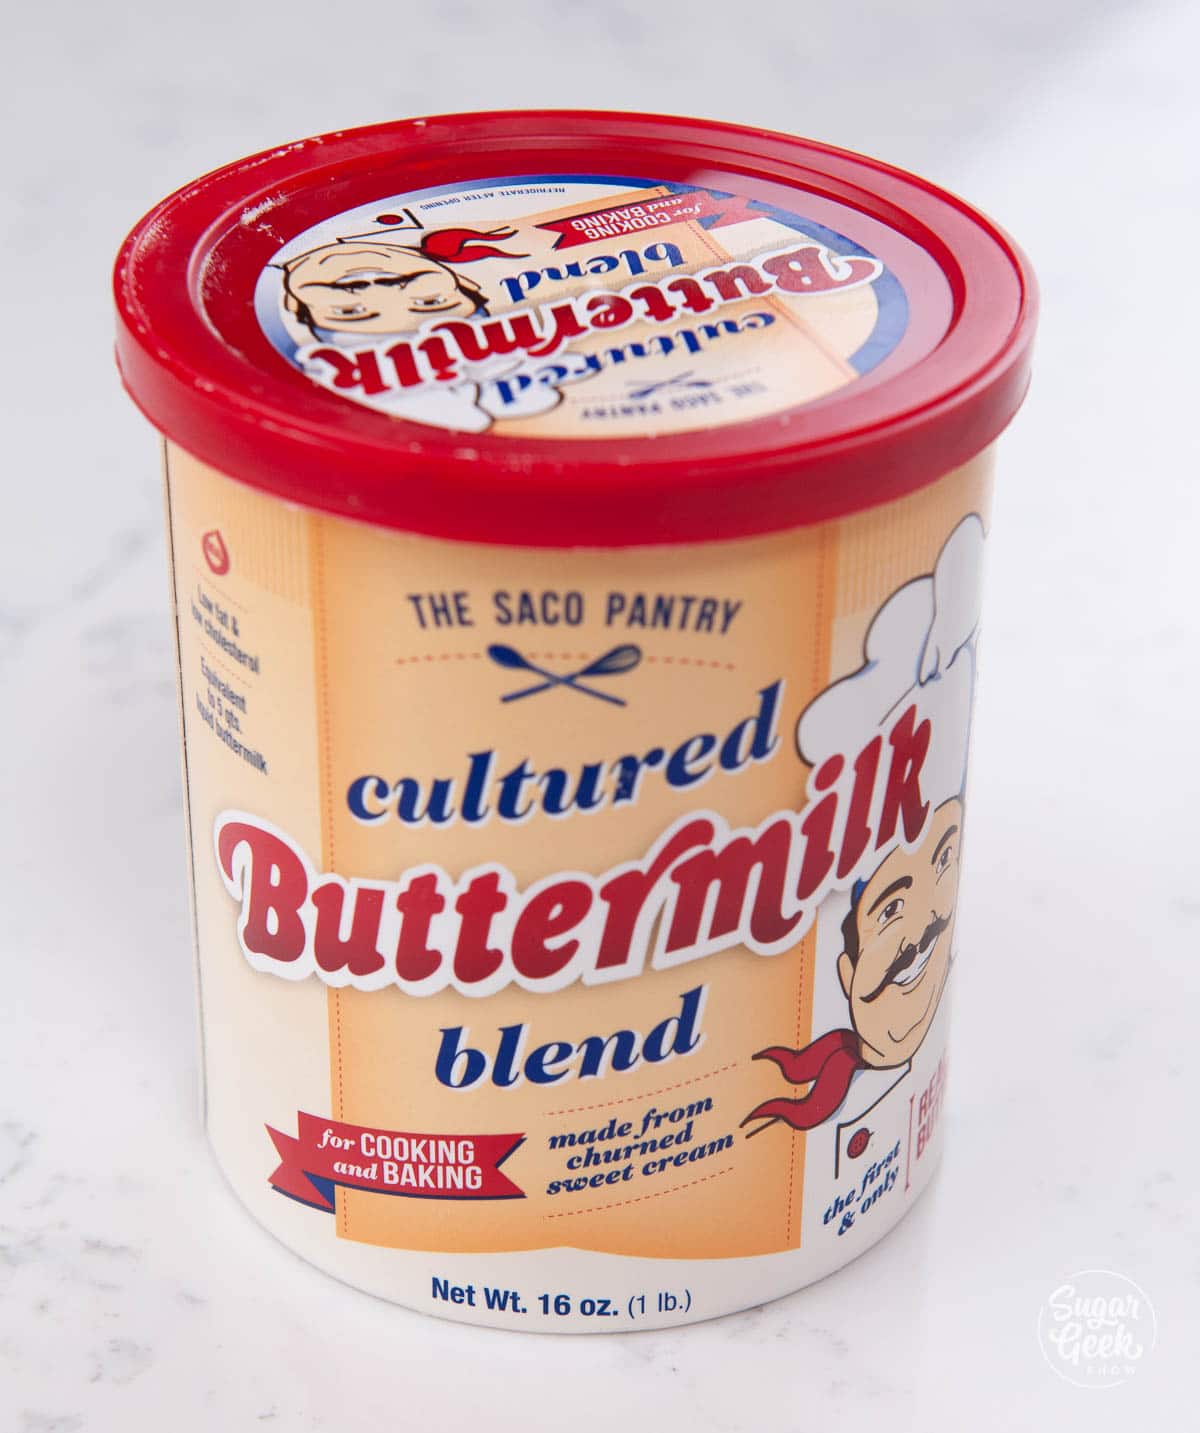 powdered buttermilk